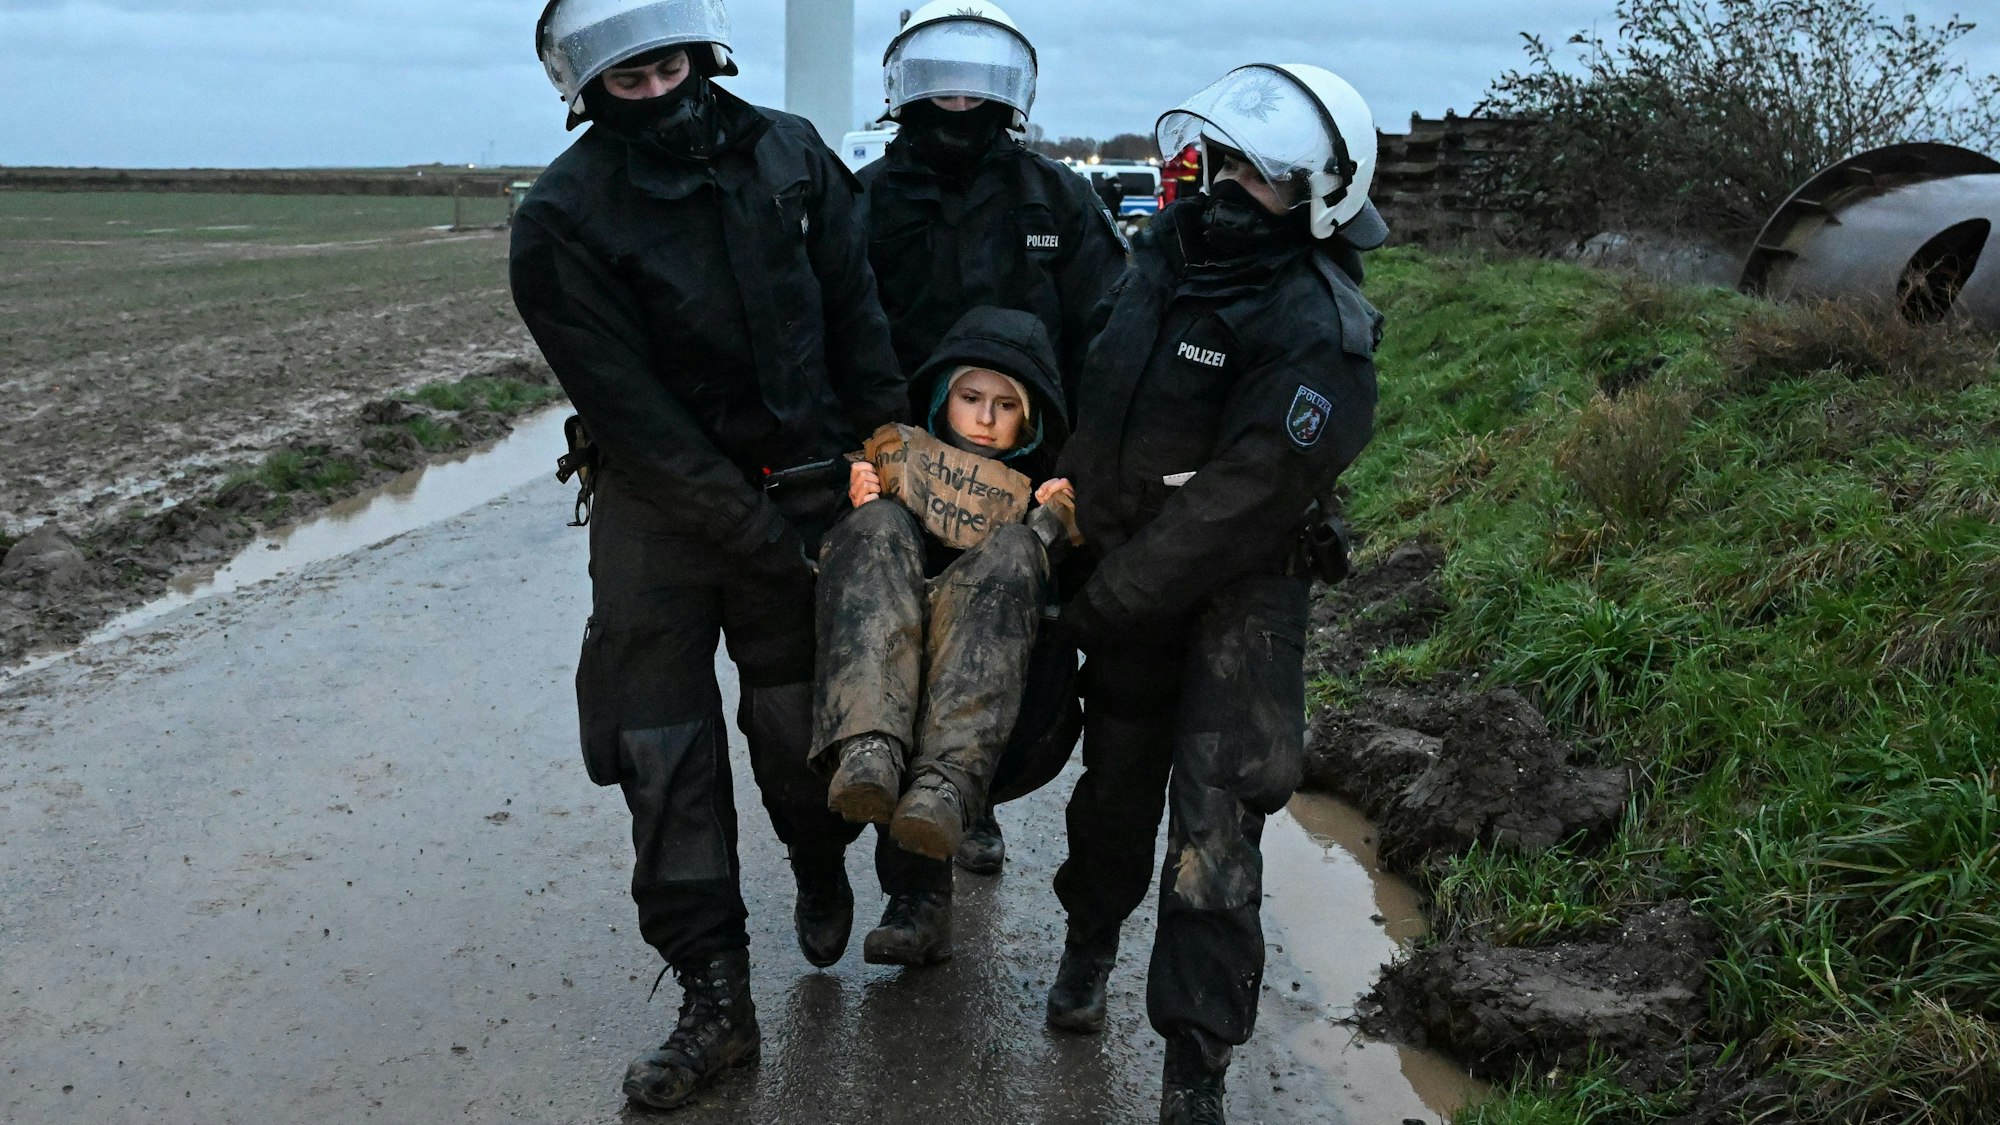 Umweltaktivistin Luisa Neubauer wird in der Nähe von Lützerath von Polizisten während einer Sitzblockade weggetragen.